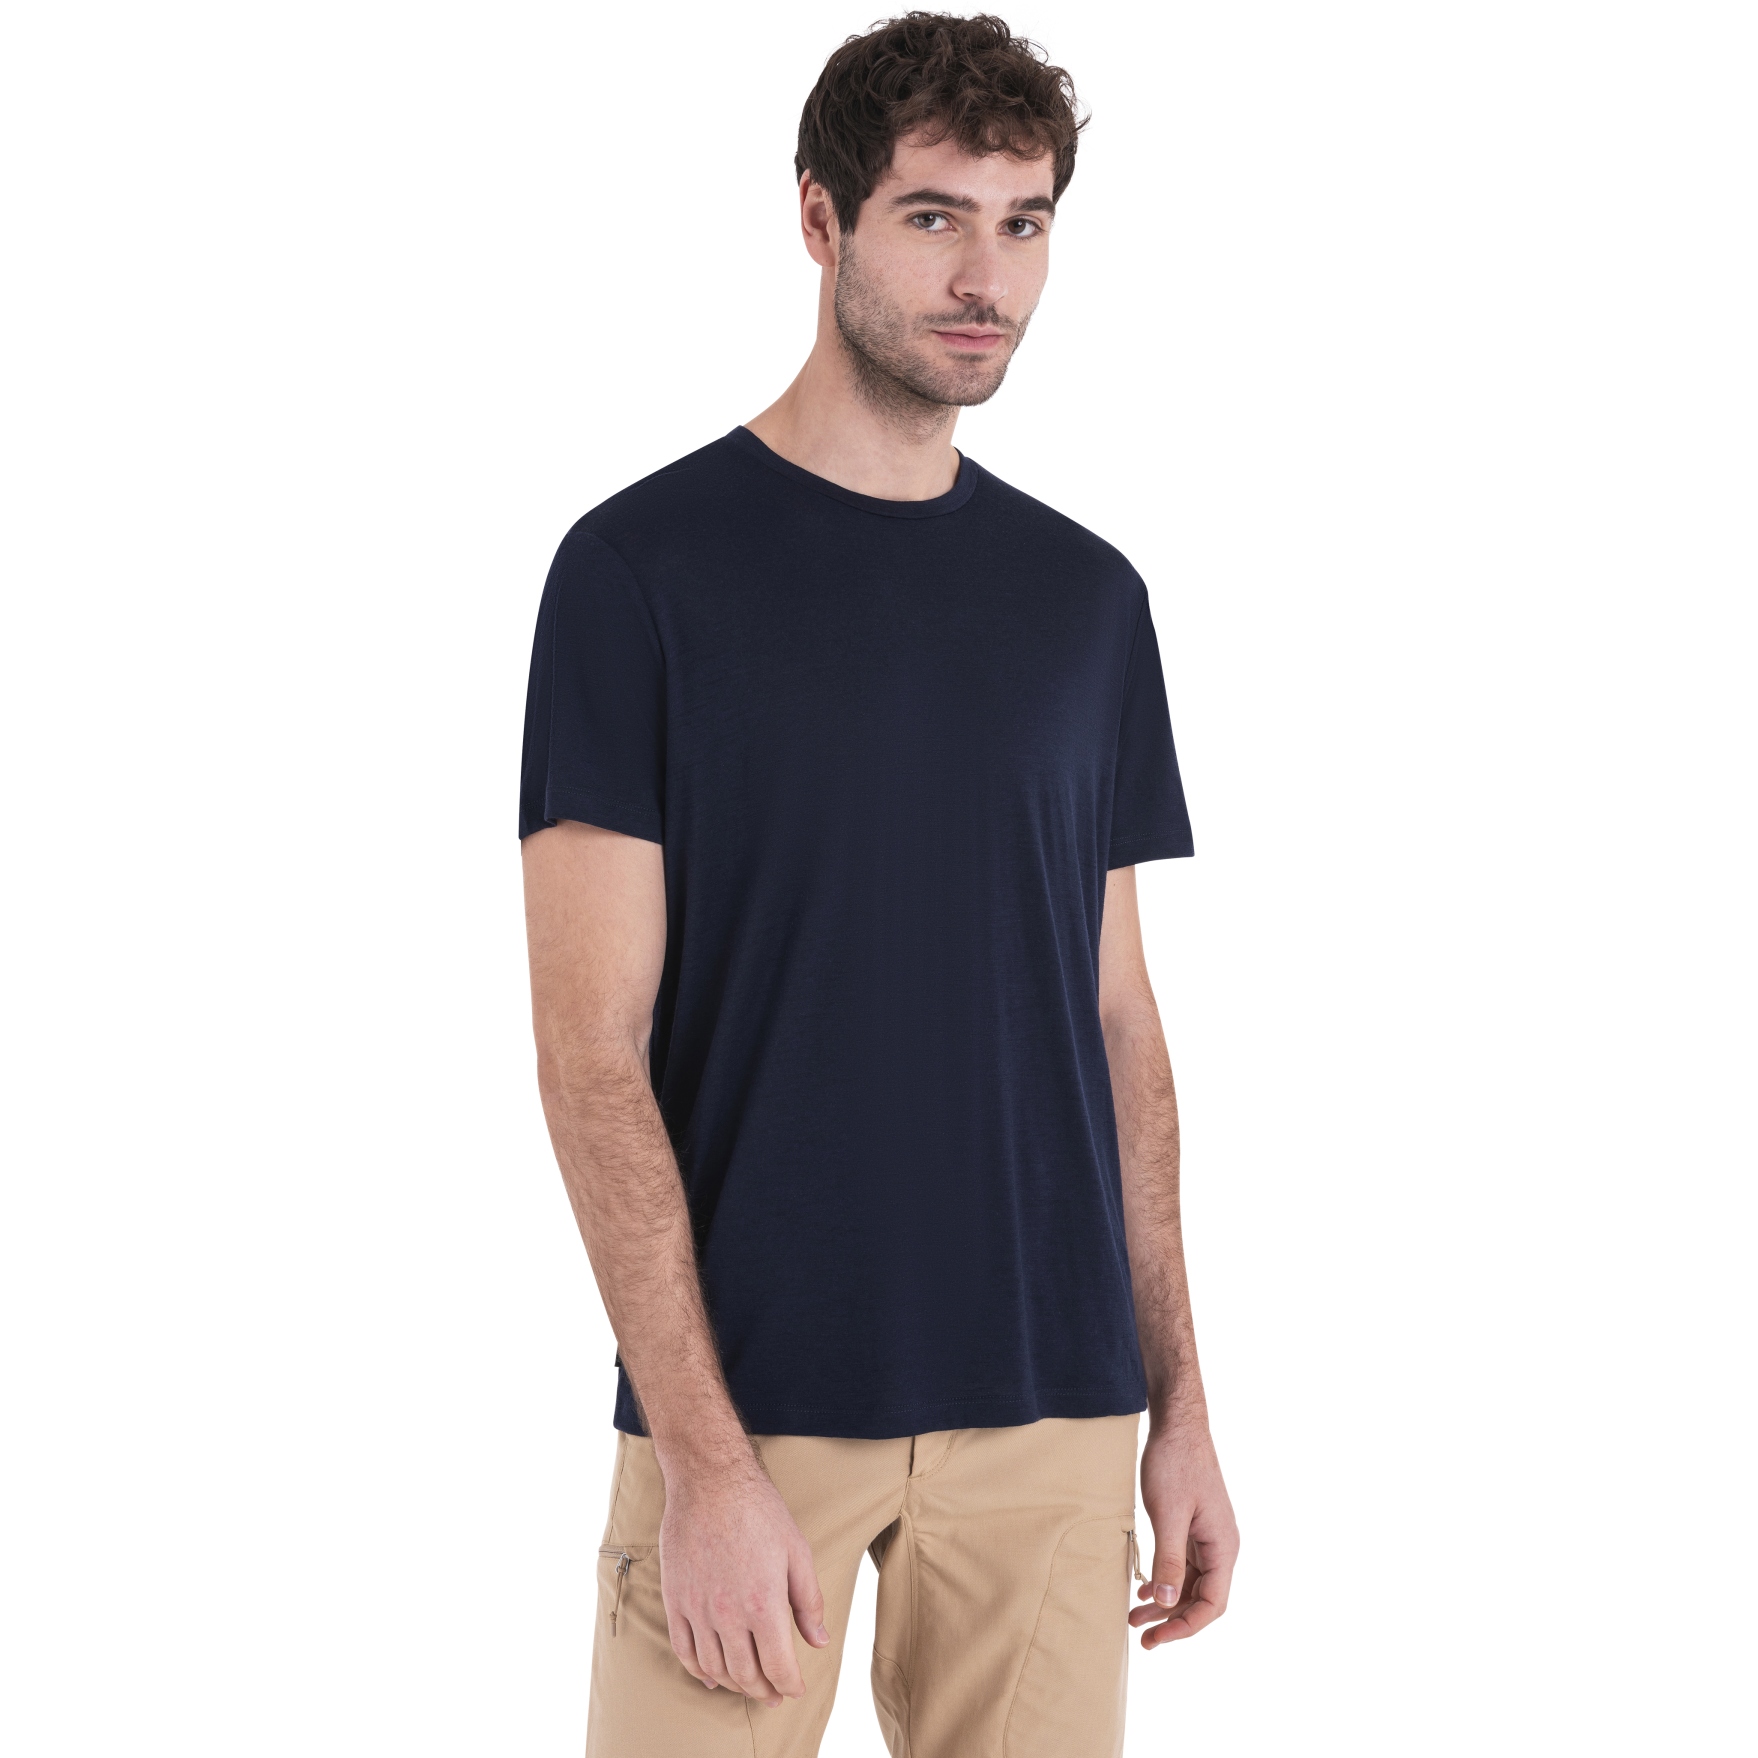 Produktbild von Icebreaker Merino 150 Tech Lite III T-Shirt Herren - Midnight Navy